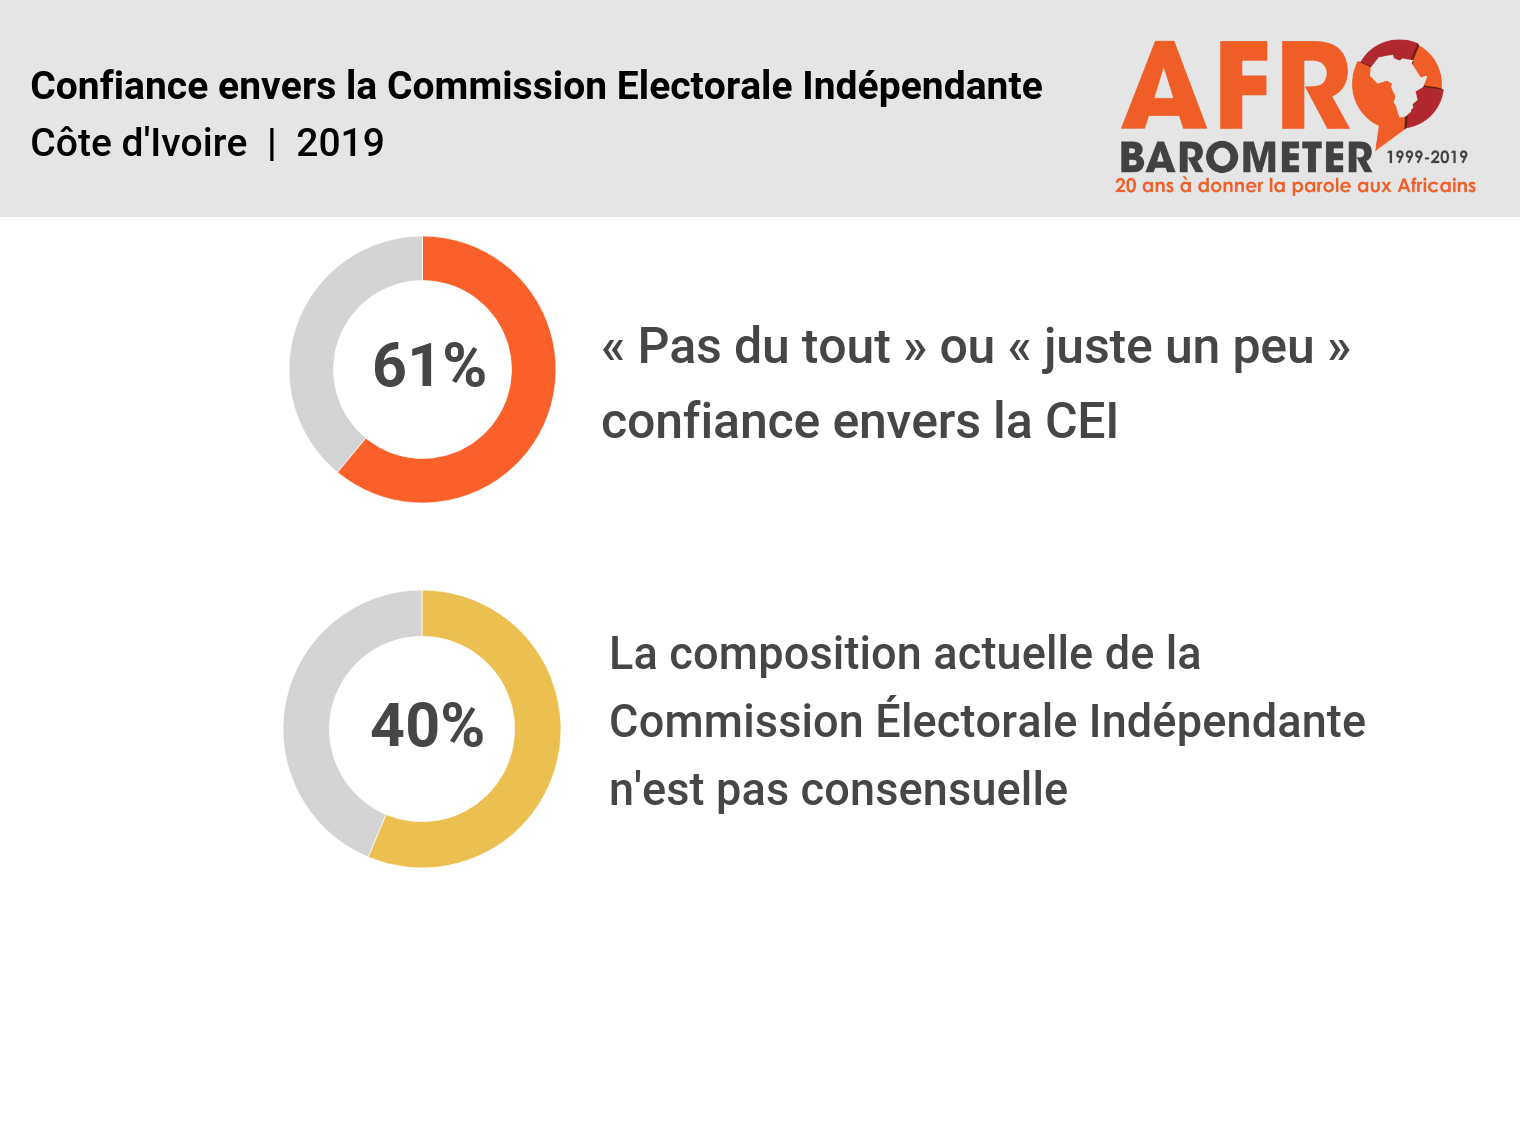 La nouvelle CEI et le pari d’une élection présidentielle juste et apaisée en Côte d’Ivoire